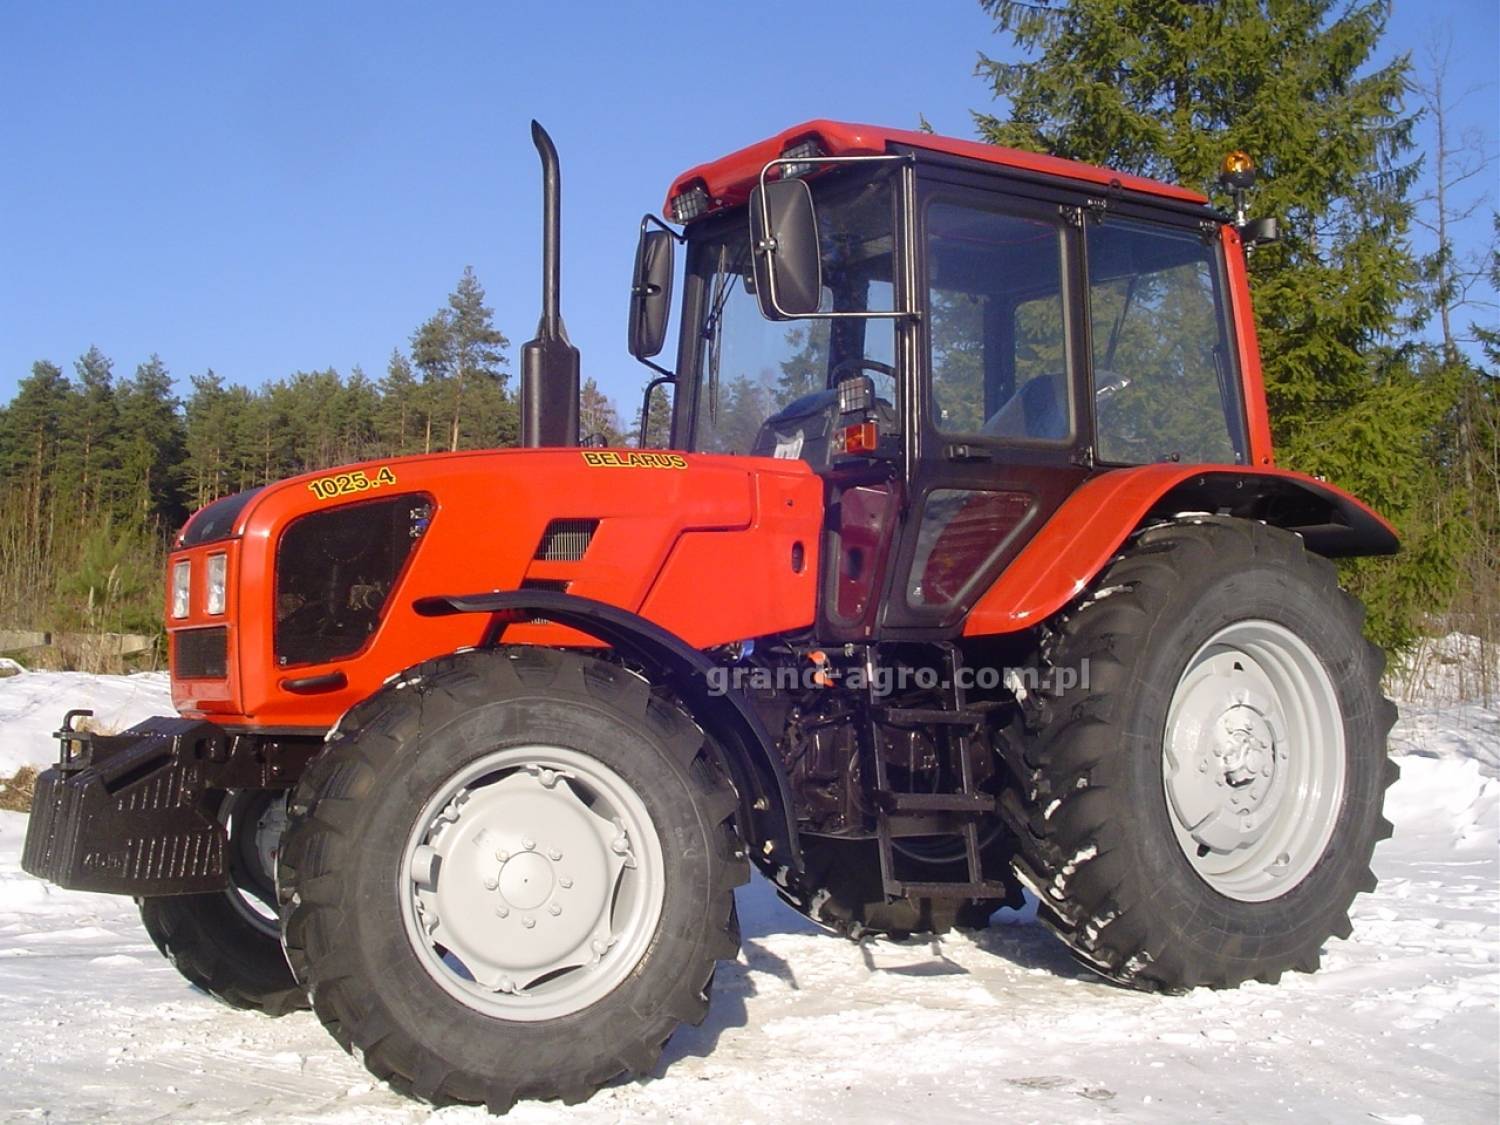 Мтз 1025: технические характеристики трактора беларус